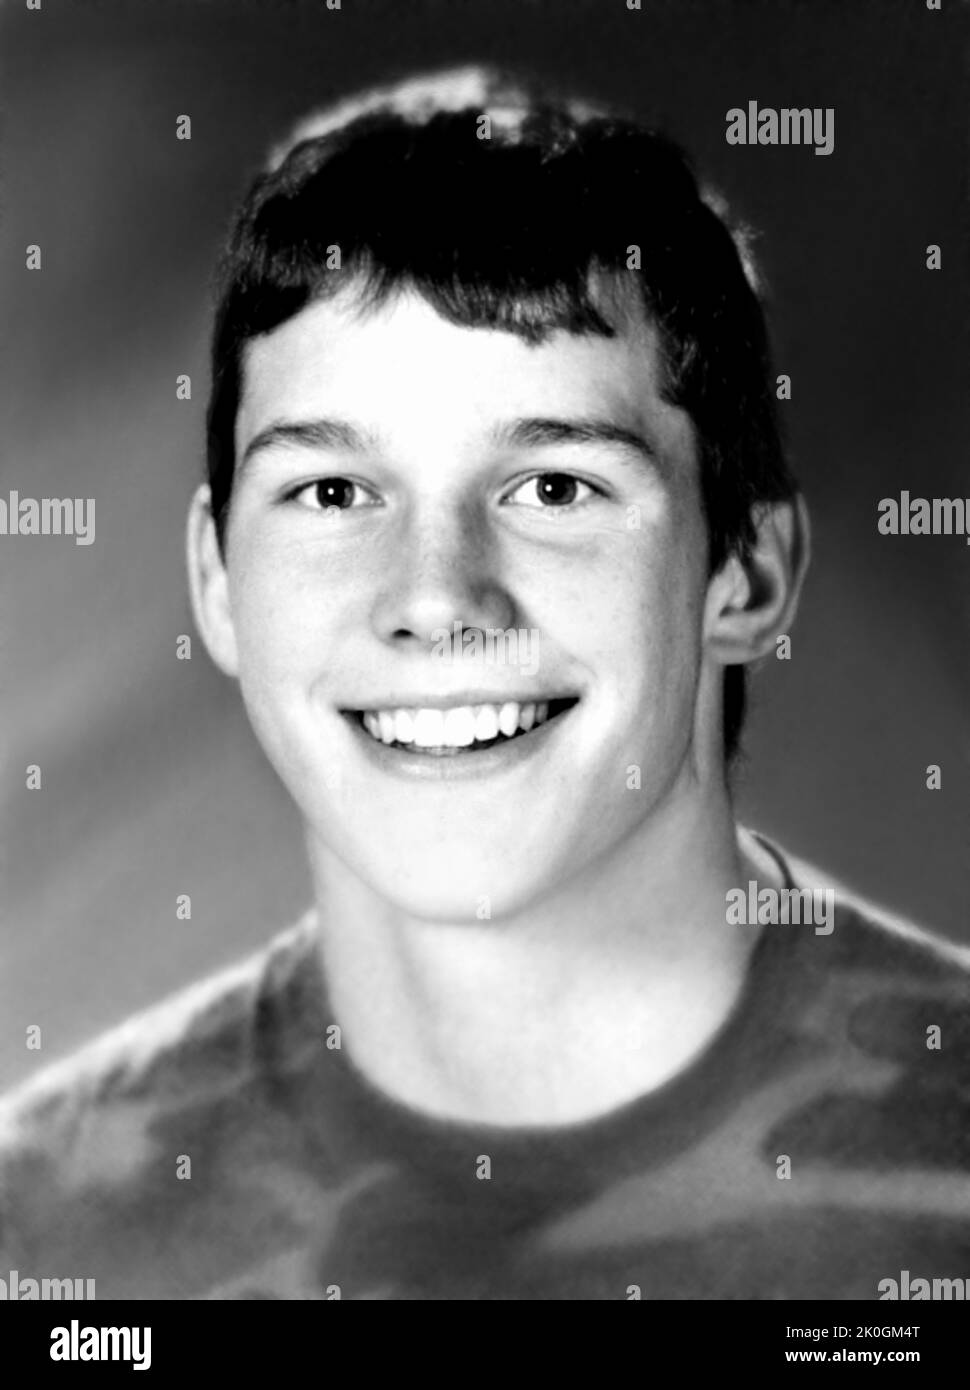 1996 c., USA : The celebrated american movie actor CHRIS PRATT ( born 21 june 1979 ) when was a young boy aged 17 . Unknown photographer from High School Yearbook . - HISTORY - FOTO STORICHE - ATTORE - MOVIE - CINEMA - SEX SYMBOL - personalità da TEENAGER - RAGAZZO -  da giovane - personality personalities when was young - INFANZIA - CHILDHOOD - smile - sorriso - PORTRAIT - RITRATTO --- ARCHIVIO GBB Stock Photo